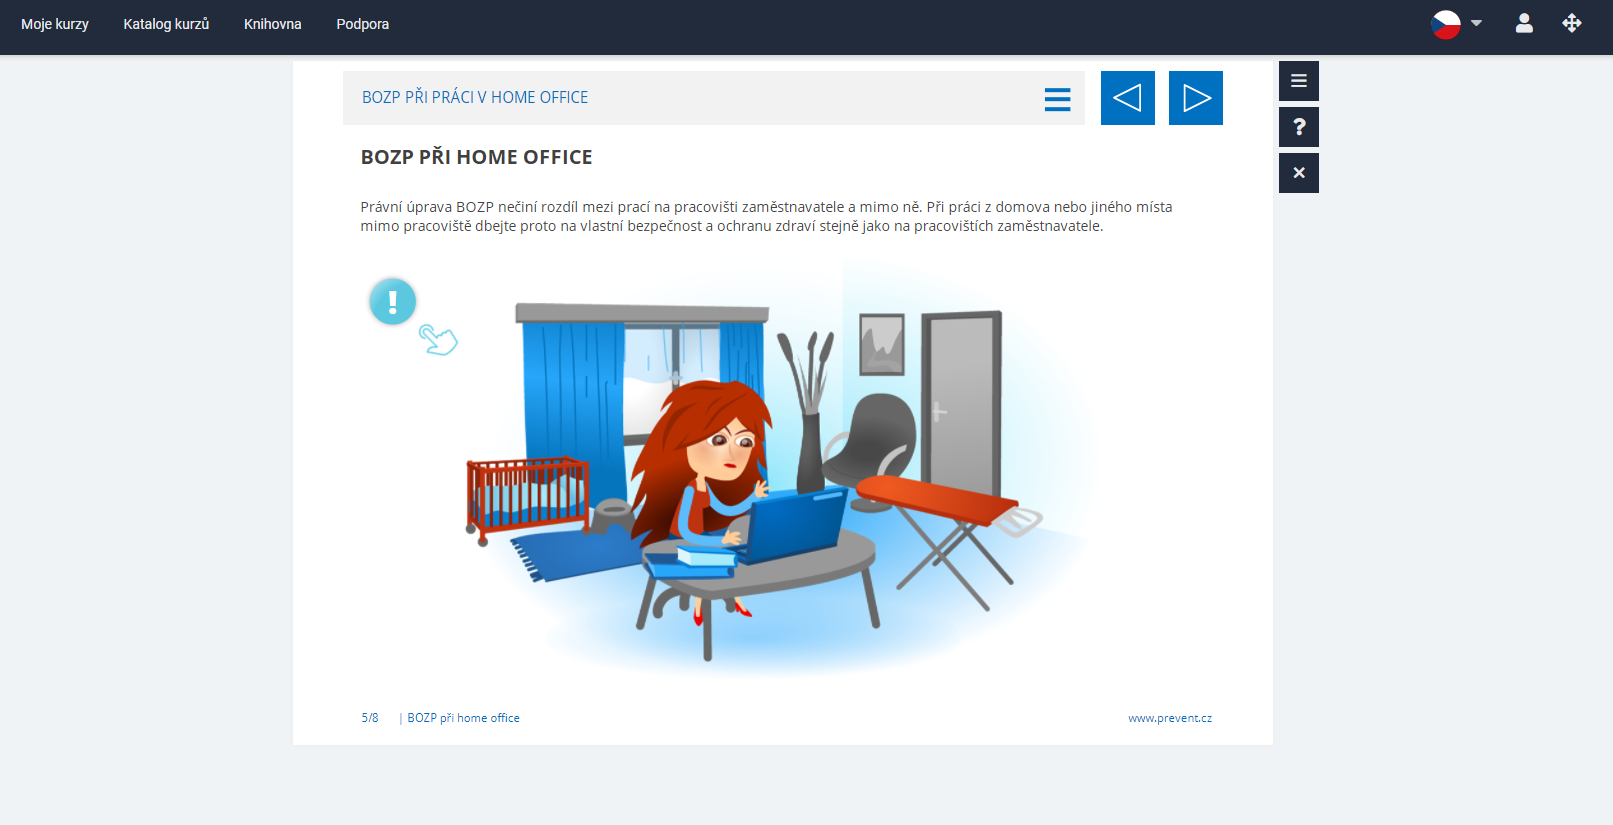 Obrazová ukázka z kurzu BOZP při práci v home office portálu eSovak